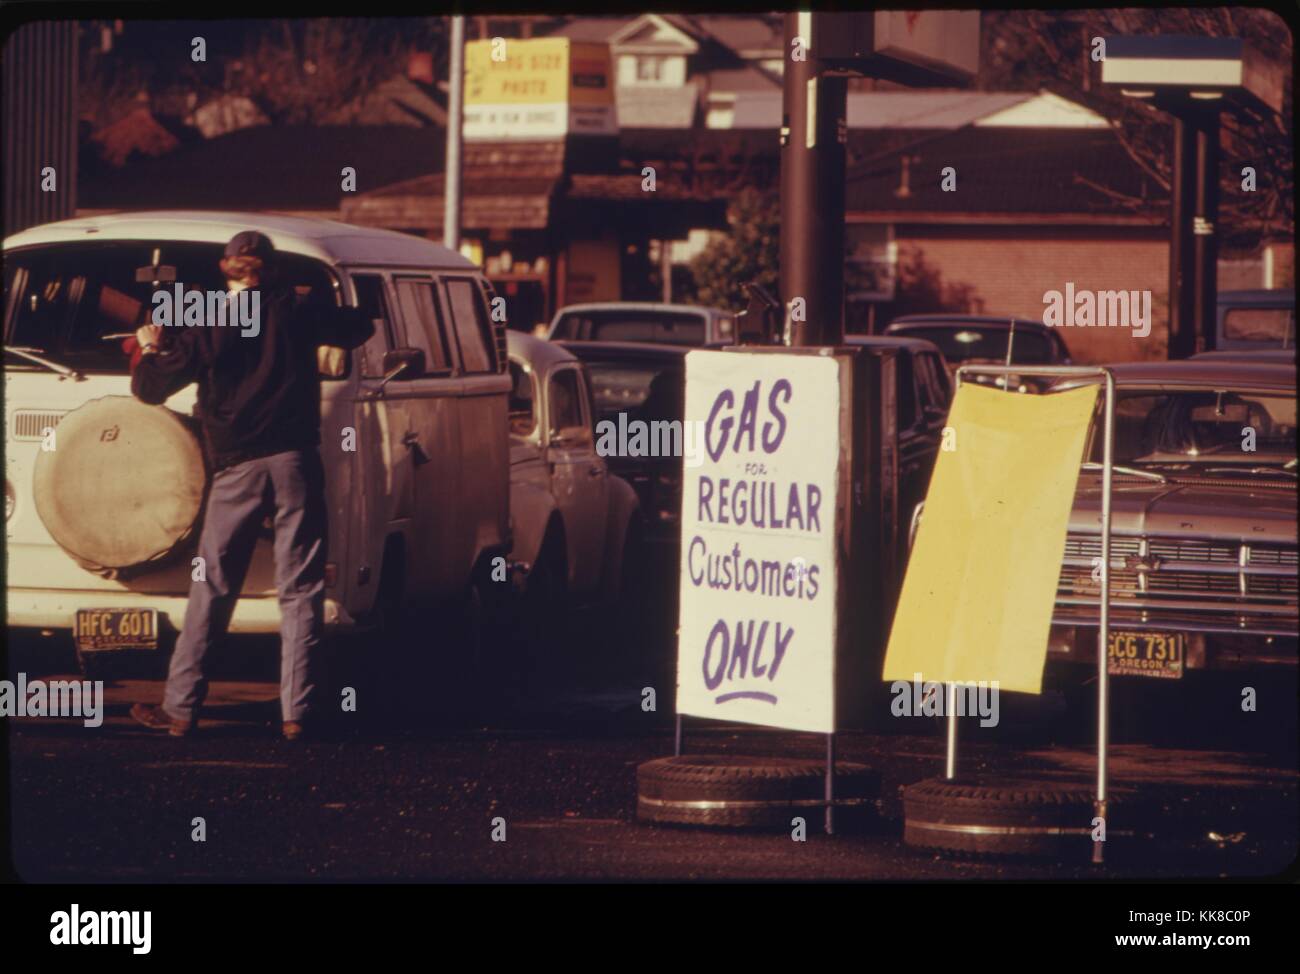 Lo stato dell'Oregon aveva un sistema di bandiera in aggiunta al suo sistema di pari-dispari di allocazione di benzina. Immagine cortesia archivi nazionali, 1973. Foto Stock